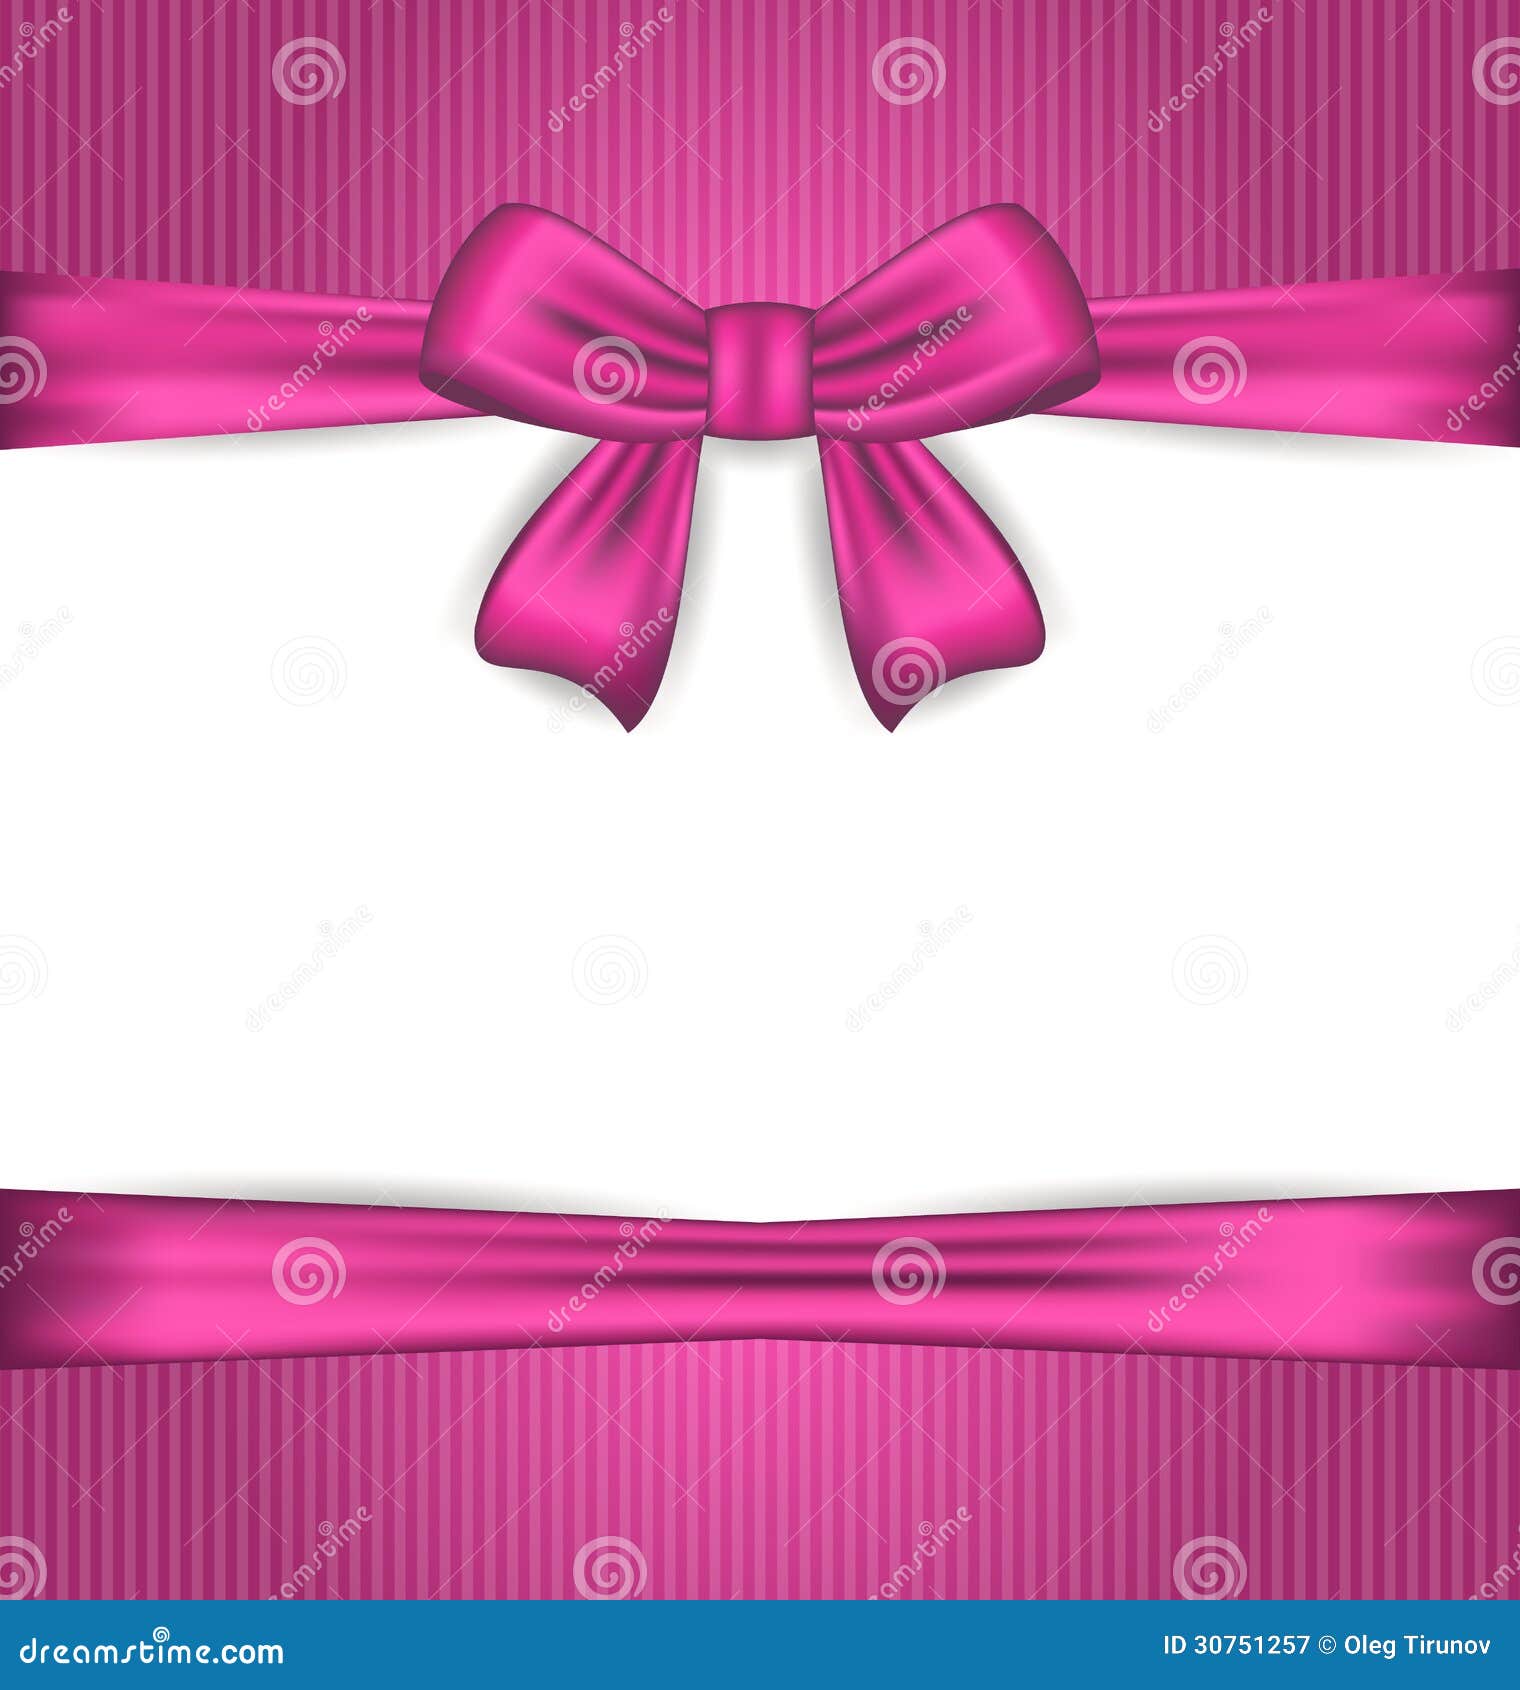 Set Three Realistic Pink Silk Ribbon Stock Vector (Royalty Free